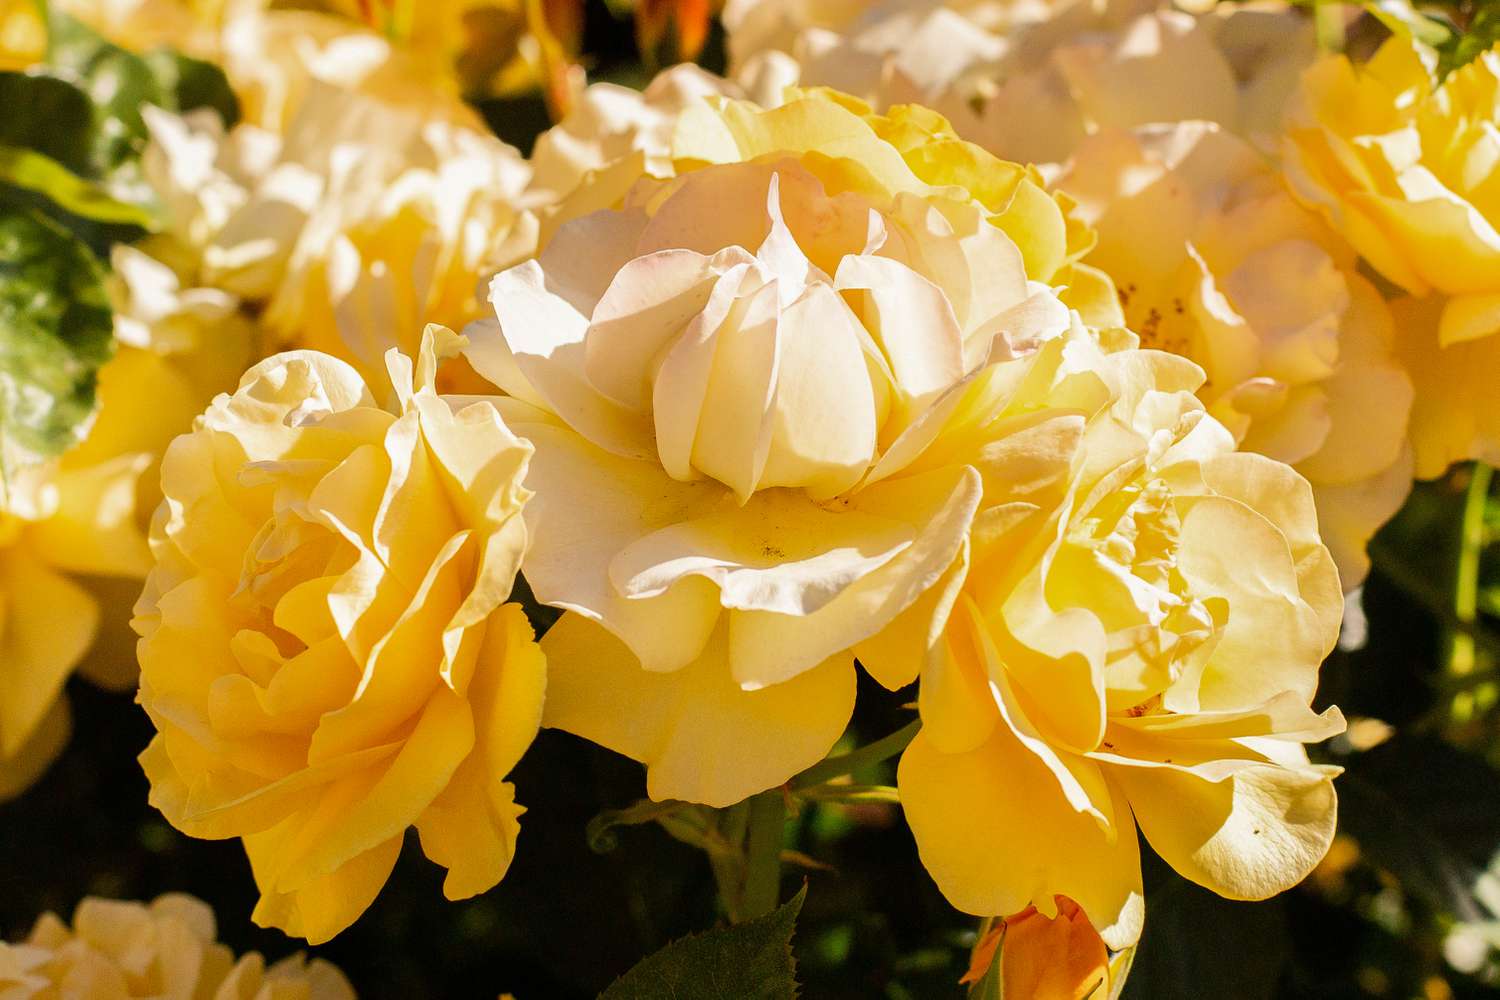 Julia Child-Rosen mit gekräuselten gelben Blütenblättern im Sonnenlicht in Großaufnahme